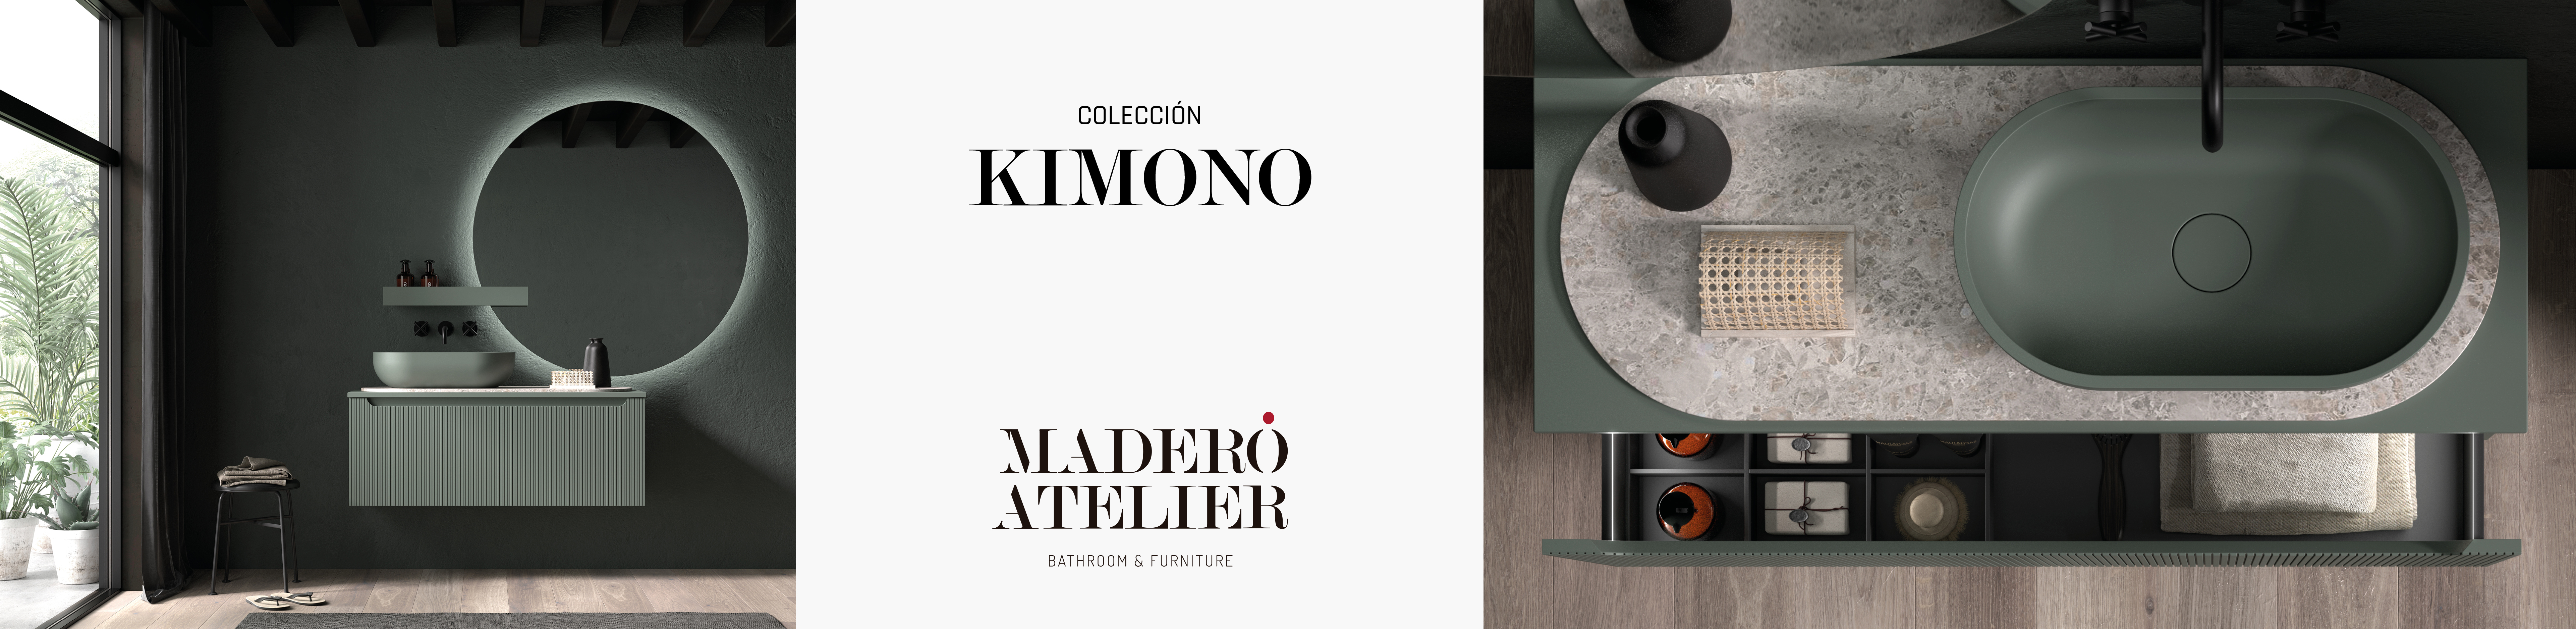 Mueble auxiliar baño abierto Kimono de Maderó Atelier estilo Vintage